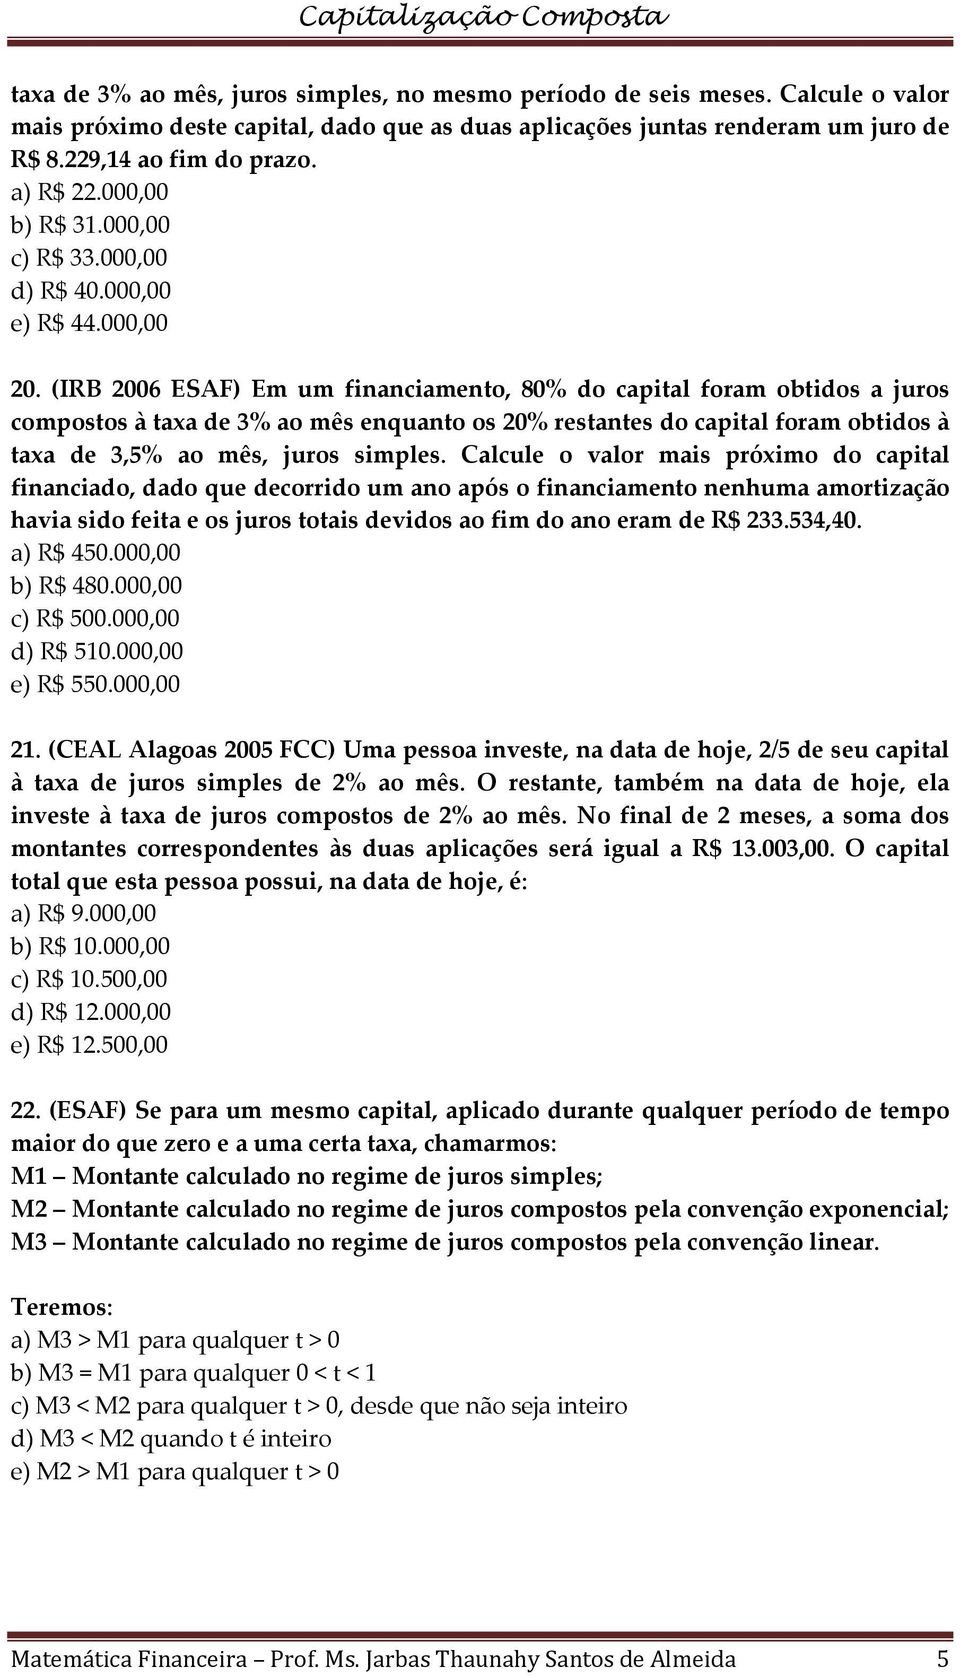 (IRB 2006 ESAF) Em um financiamento, 80% do capital foram obtidos a juros compostos à taxa de 3% ao mês enquanto os 20% restantes do capital foram obtidos à taxa de 3,5% ao mês, juros simples.